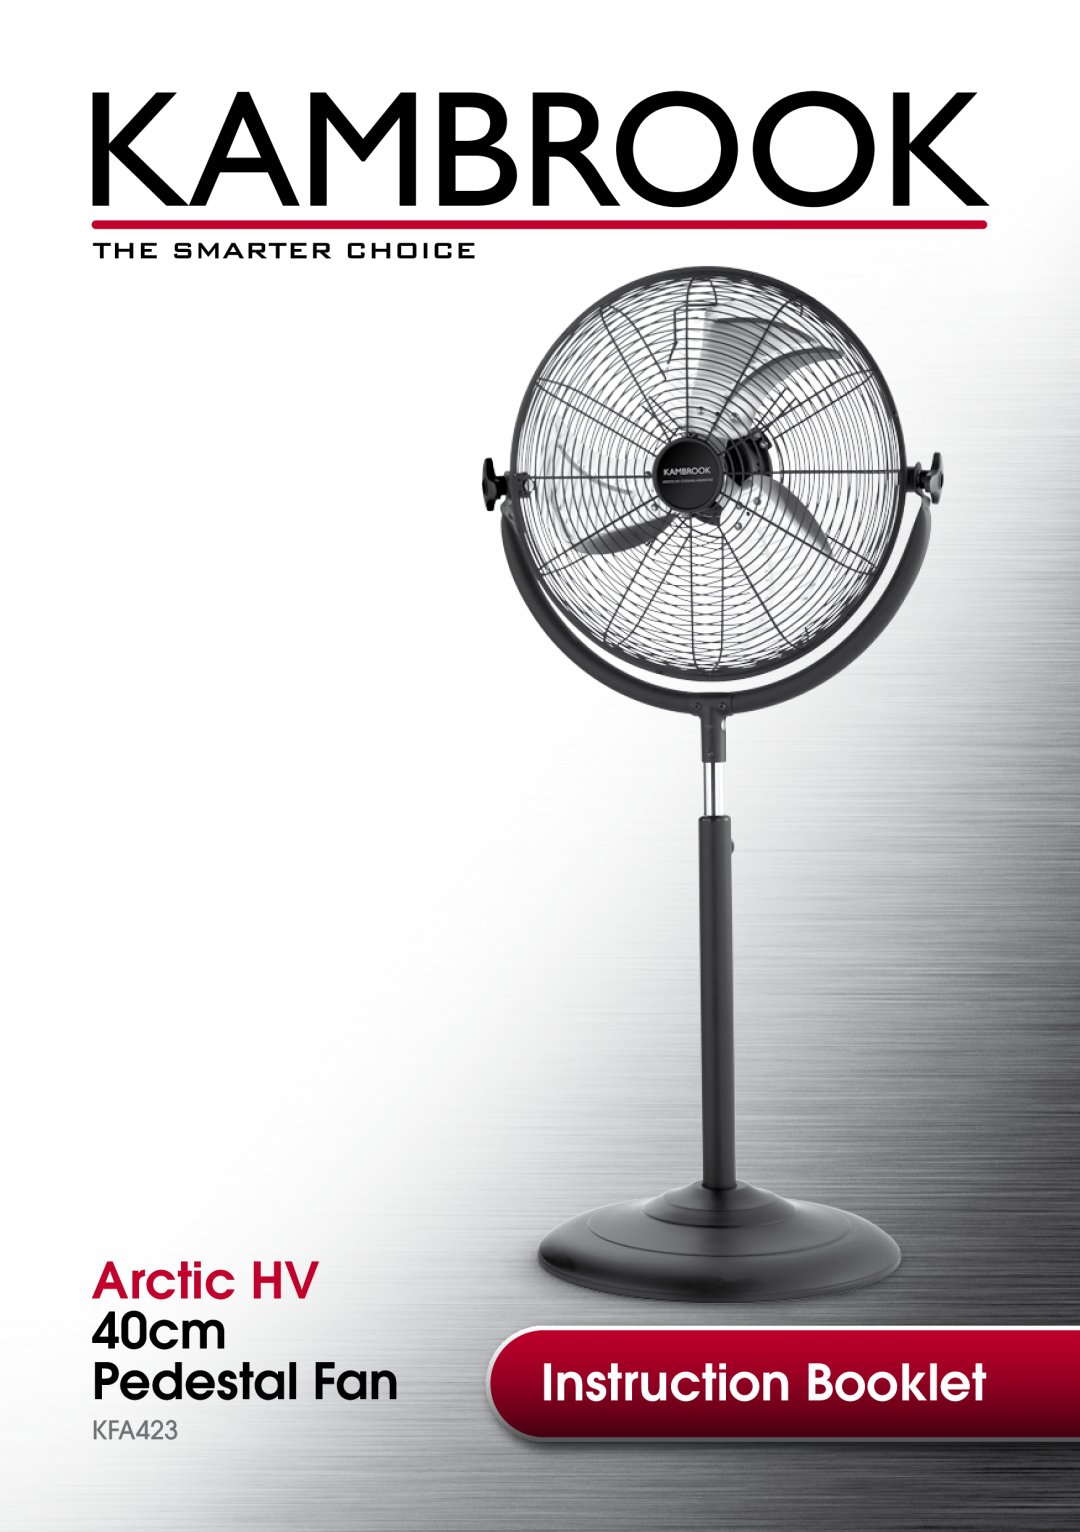 Kambrook KFA423 manual Arctic HV, 40cm, Pedestal Fan, Instruction Booklet 